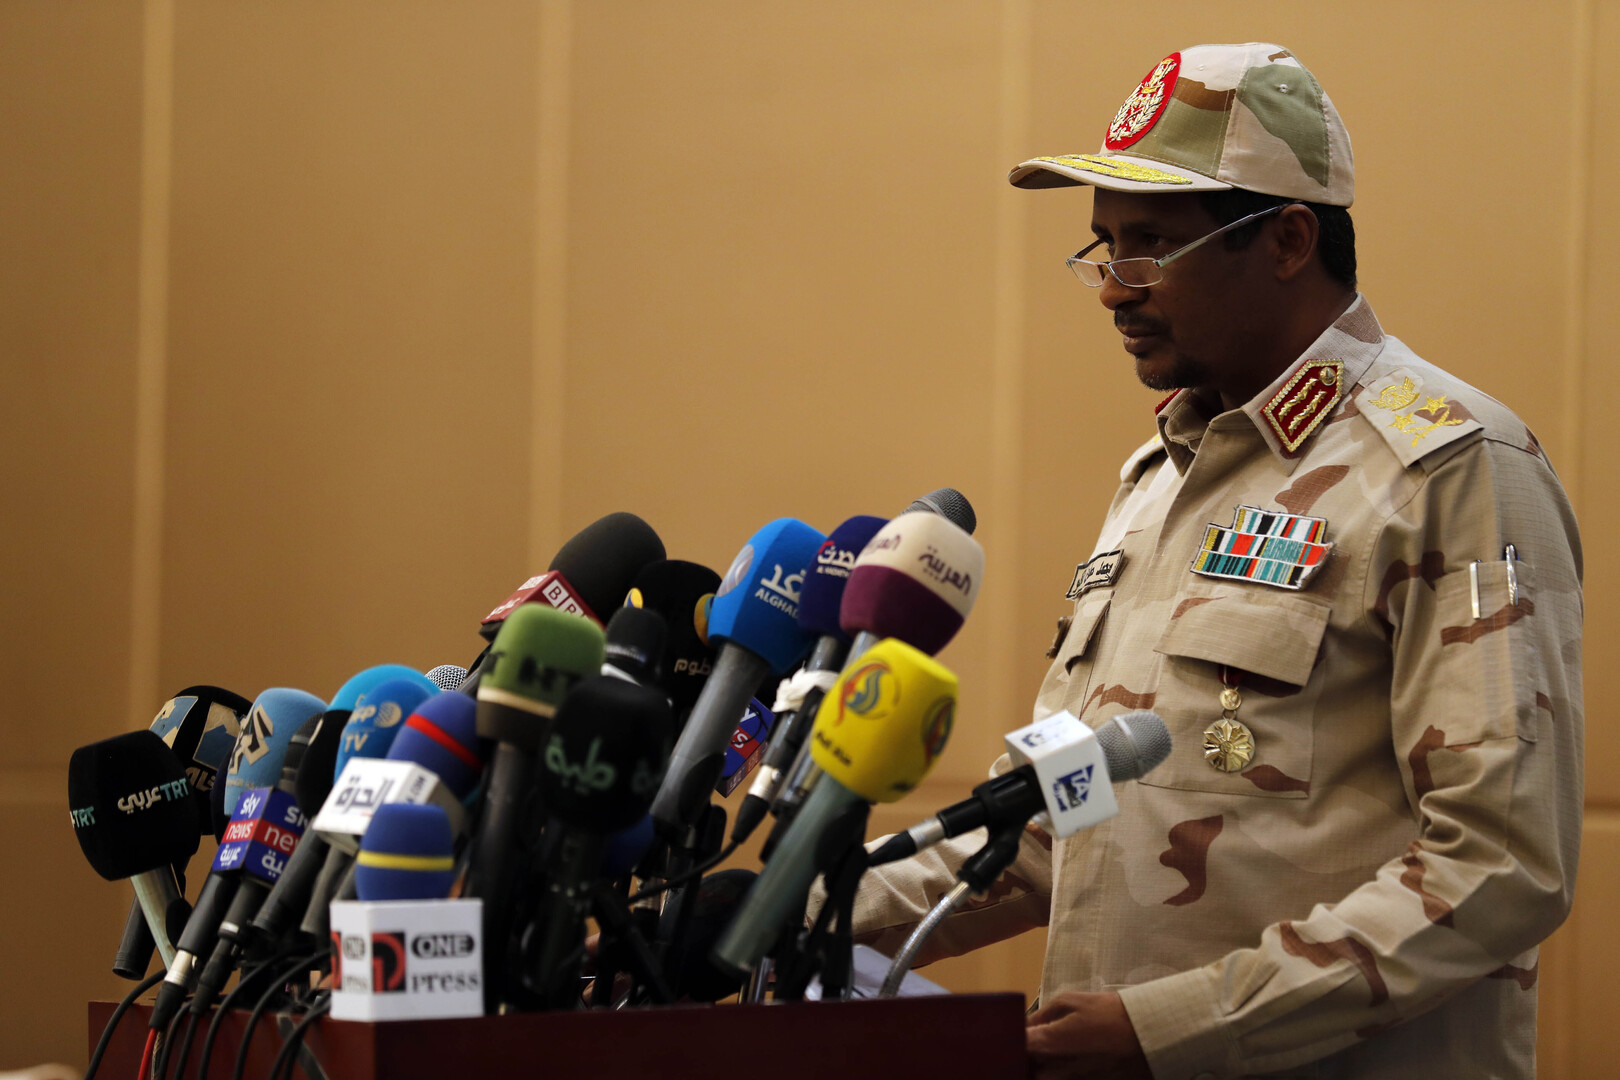 السودان يؤكد إطلاق إثيوبيا سراح 25 من مواطنيه بالتزامن مع زيارة حميدتي لأديس أبابا